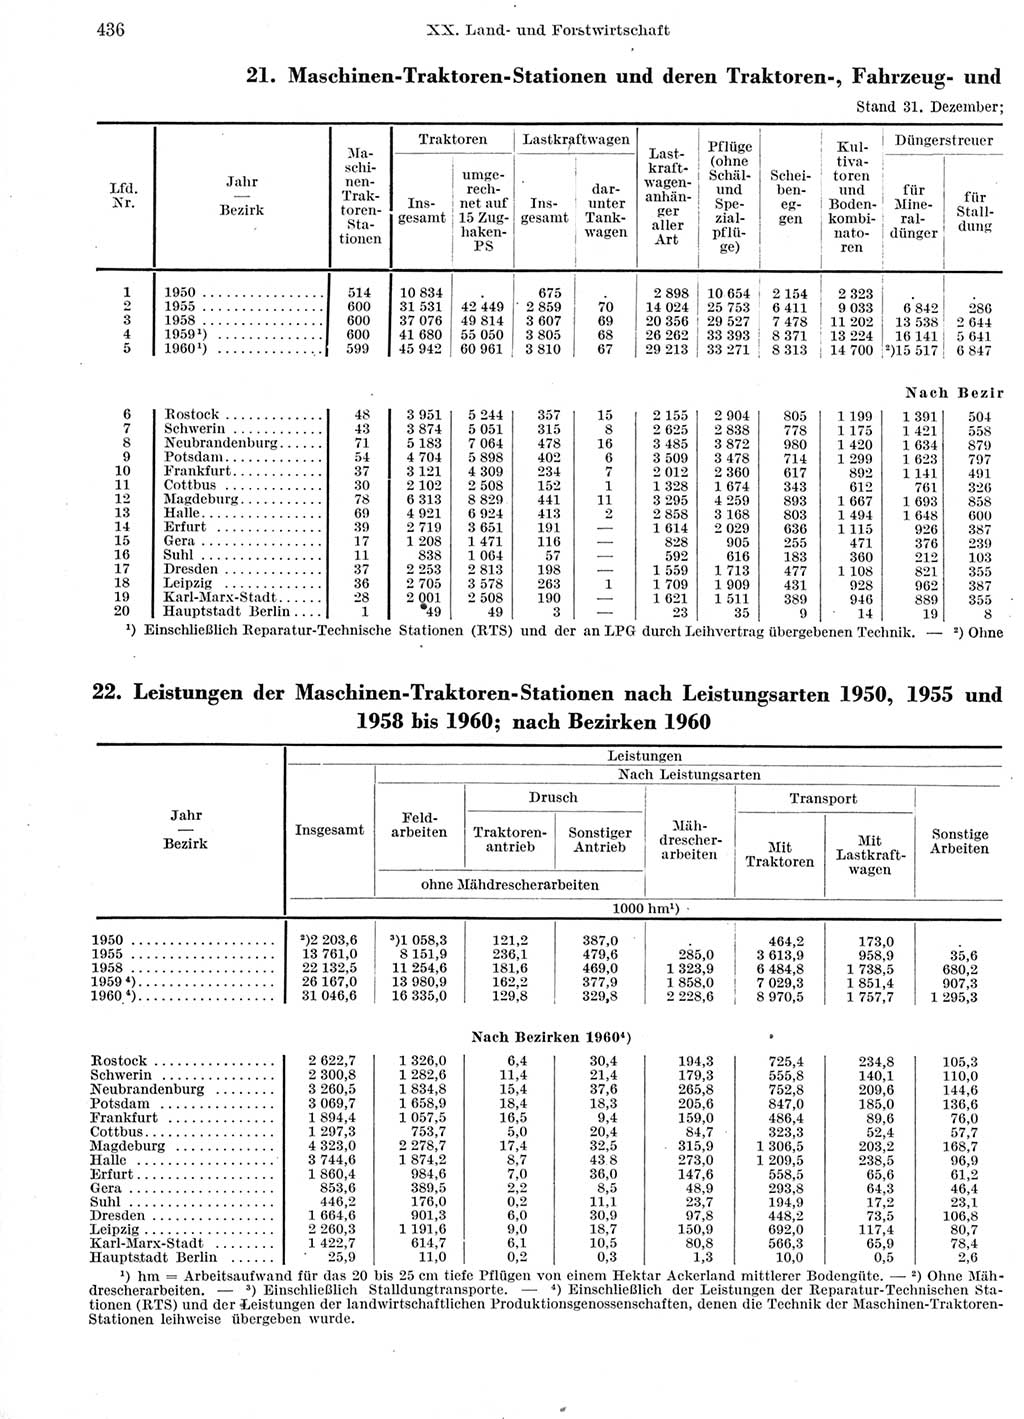 Statistisches Jahrbuch der Deutschen Demokratischen Republik (DDR) 1960-1961, Seite 436 (Stat. Jb. DDR 1960-1961, S. 436)